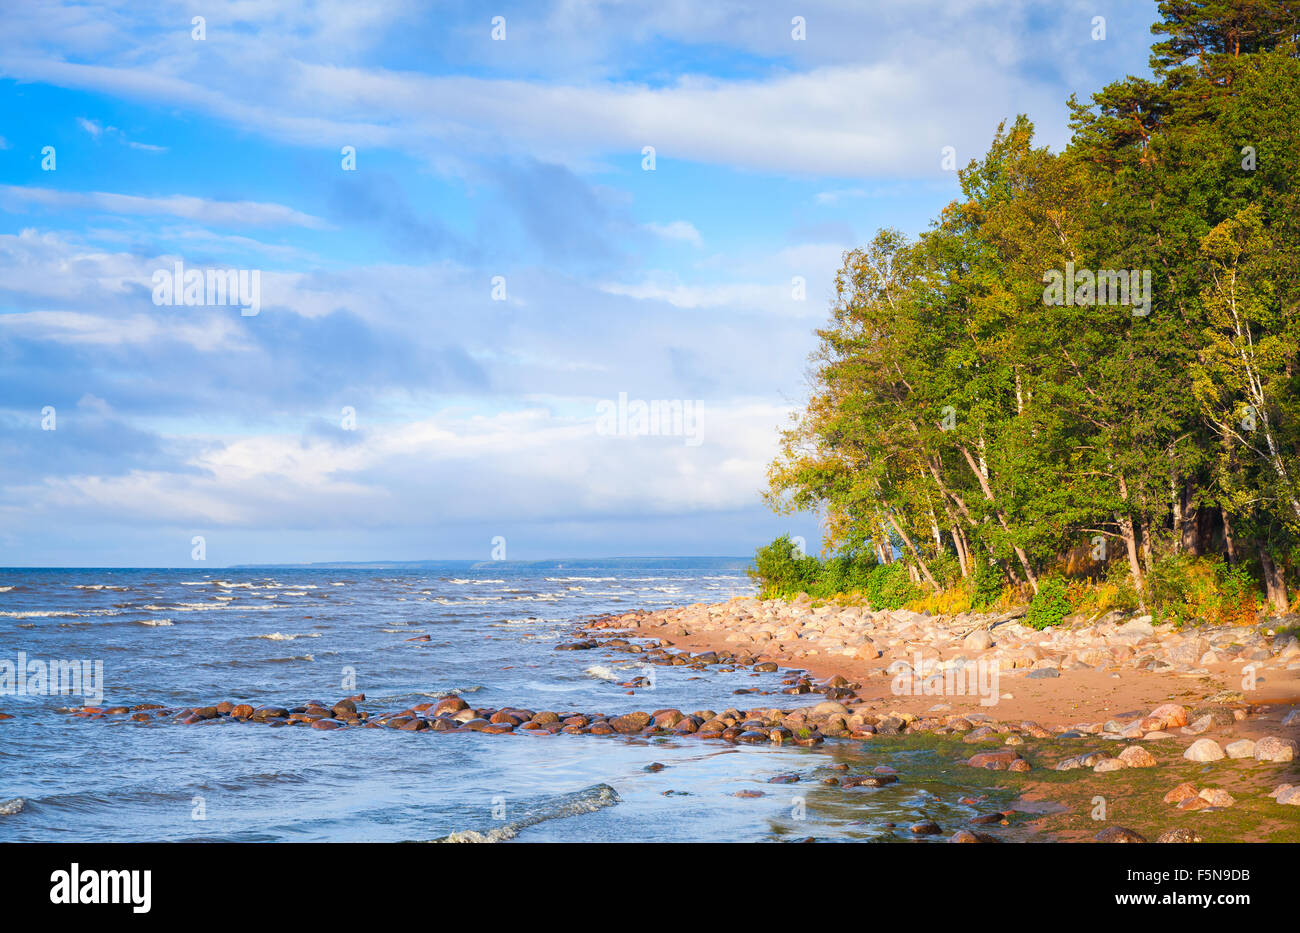 Meerbusen, Landschaft mit Küsten Steinen und Bäumen unter blauen Wolkenhimmel Stockfoto